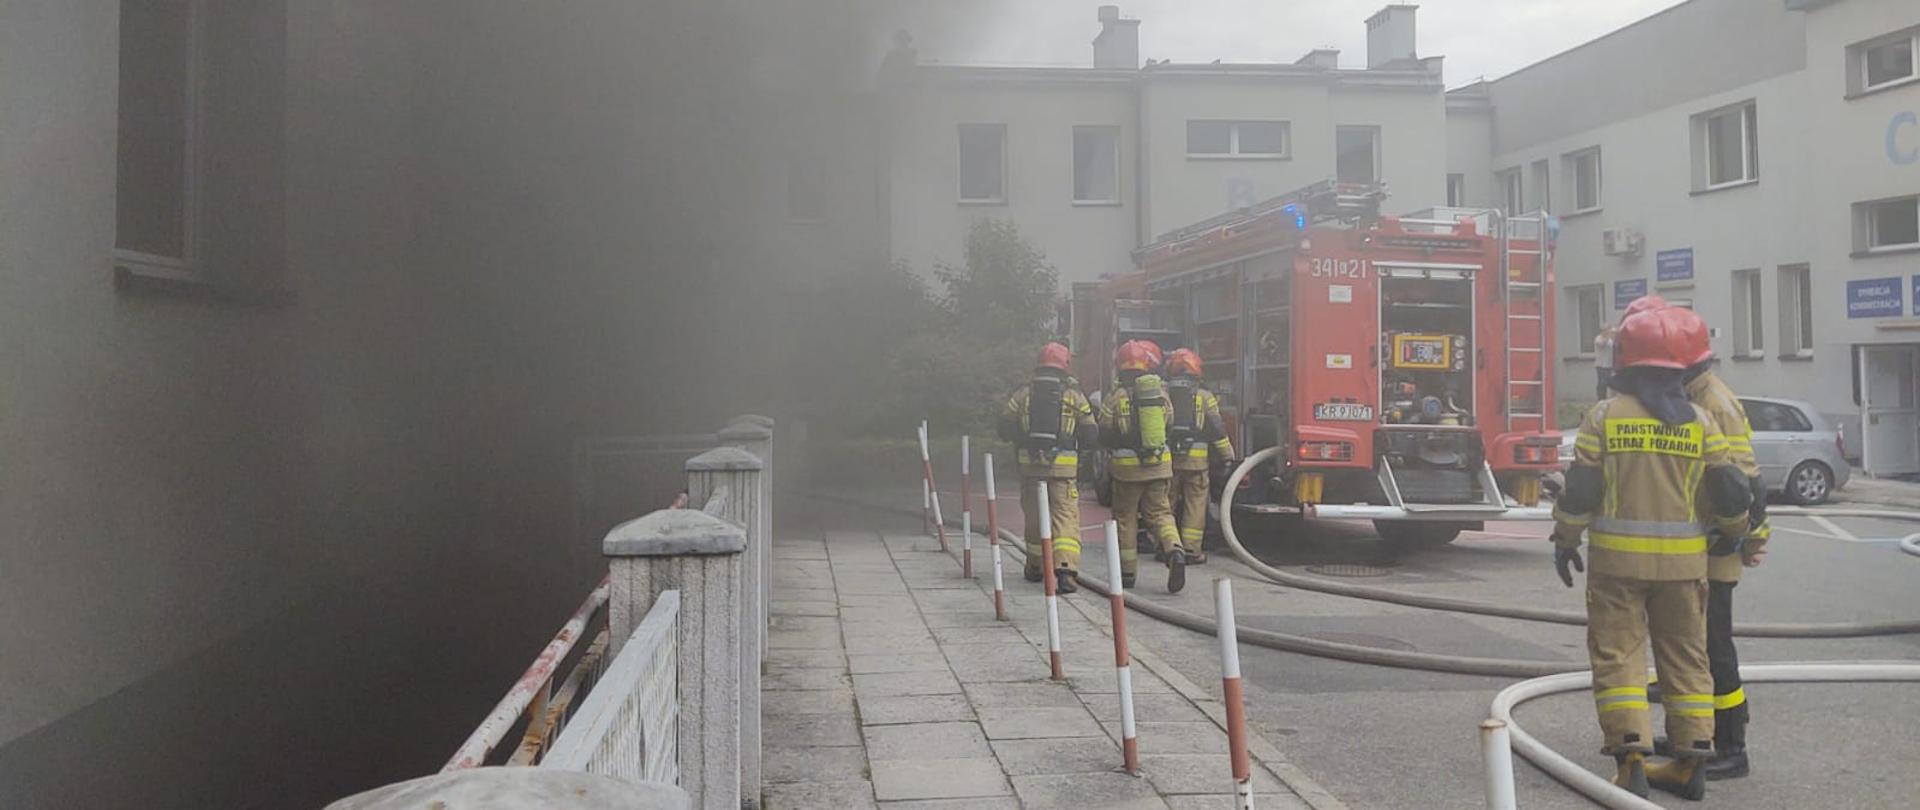 Dym wydobywający się z przychodni oraz strażacy i samochody pożarnicze w dzianiach. 